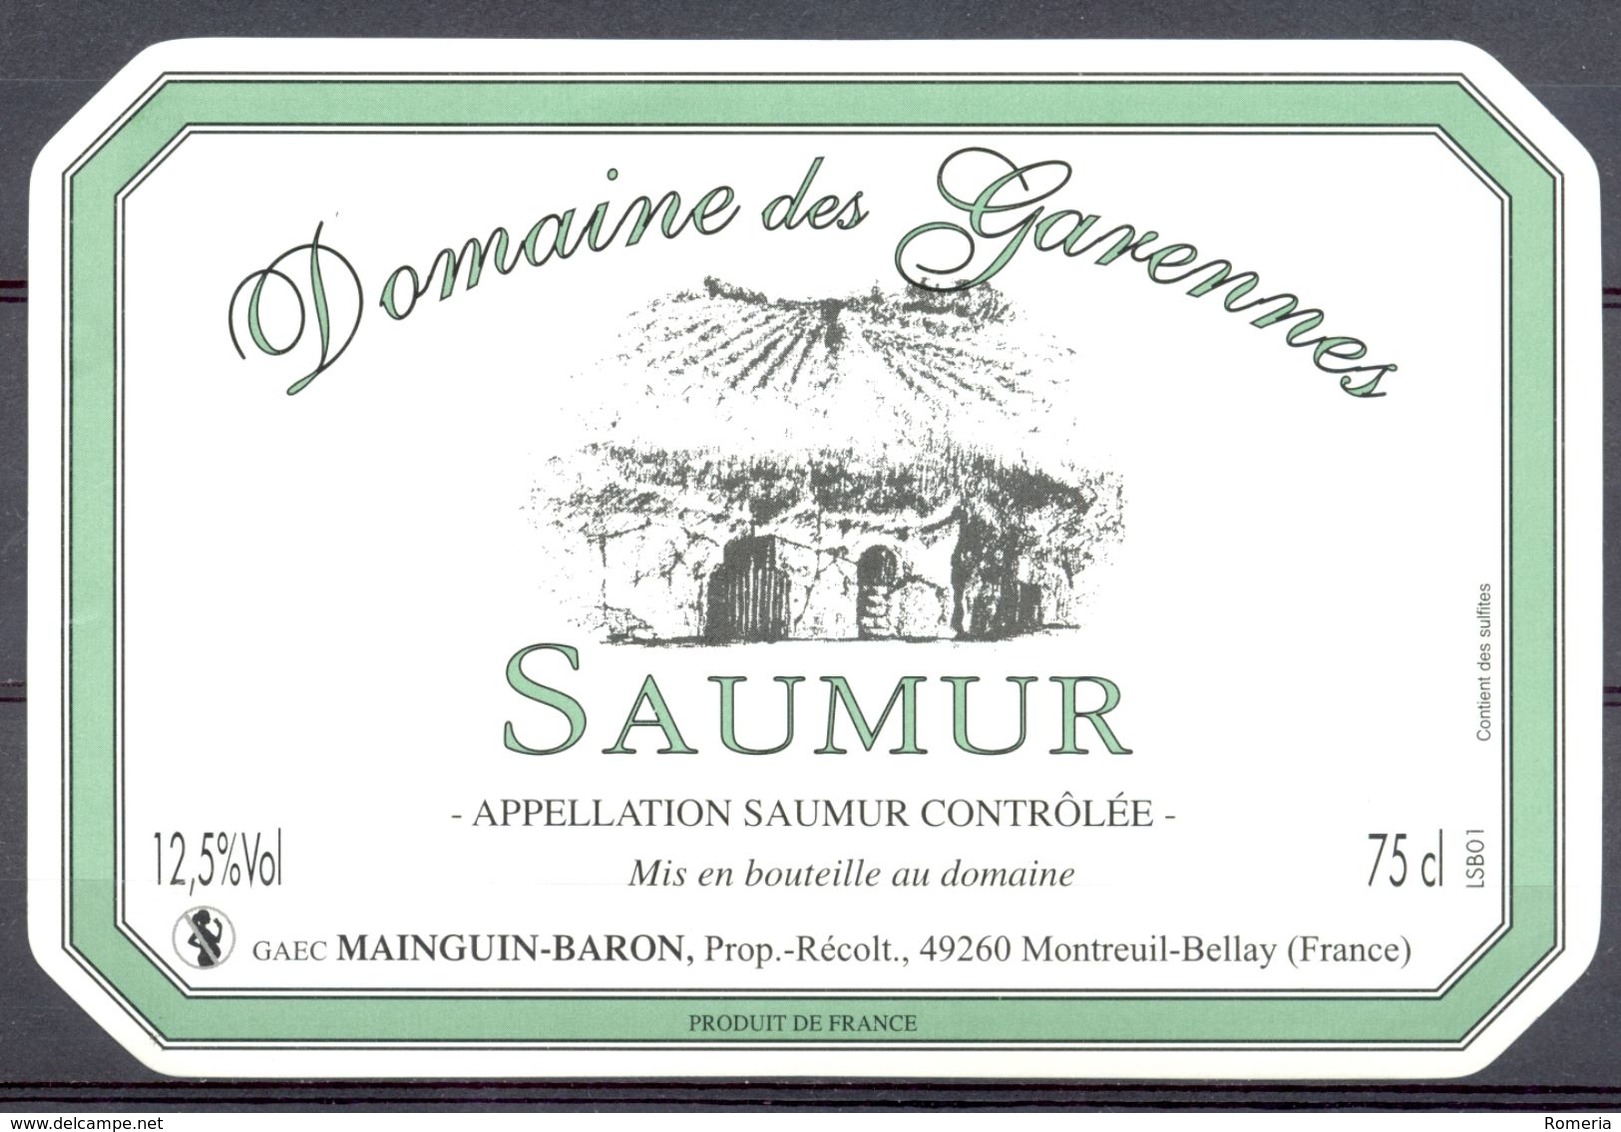 713 - Saumur - Domaine Des Garennes - GAEC Mainguin-Baron - Prop. Récoltant - 49260 Montreuil Bellay - Rode Wijn